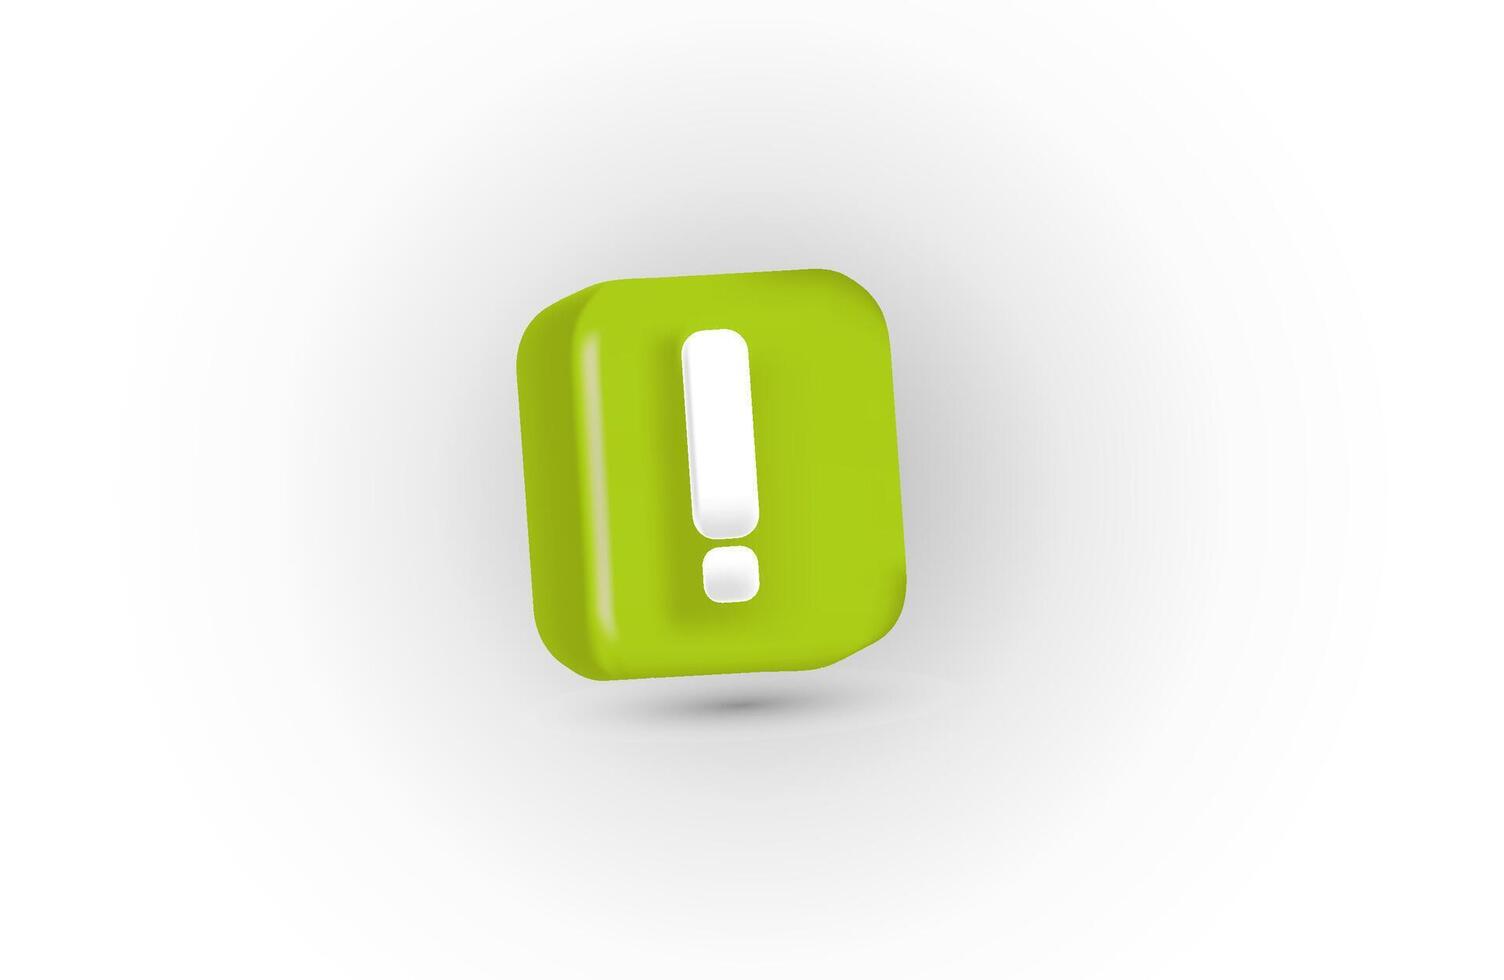 verde exclamación marca símbolo y atención o precaución firmar icono en alerta peligro problema vector